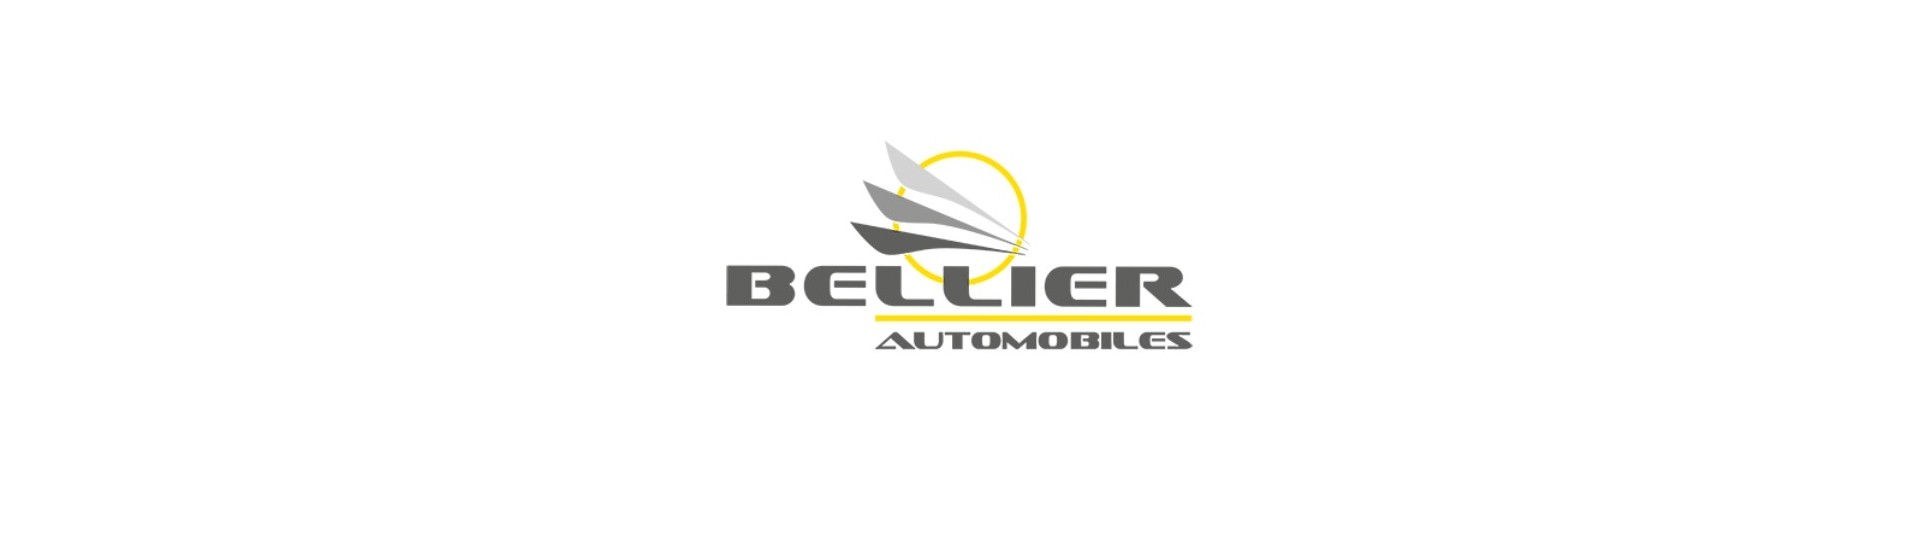 Styrhjul till bästa pris för bil utan tillstånd Bellier